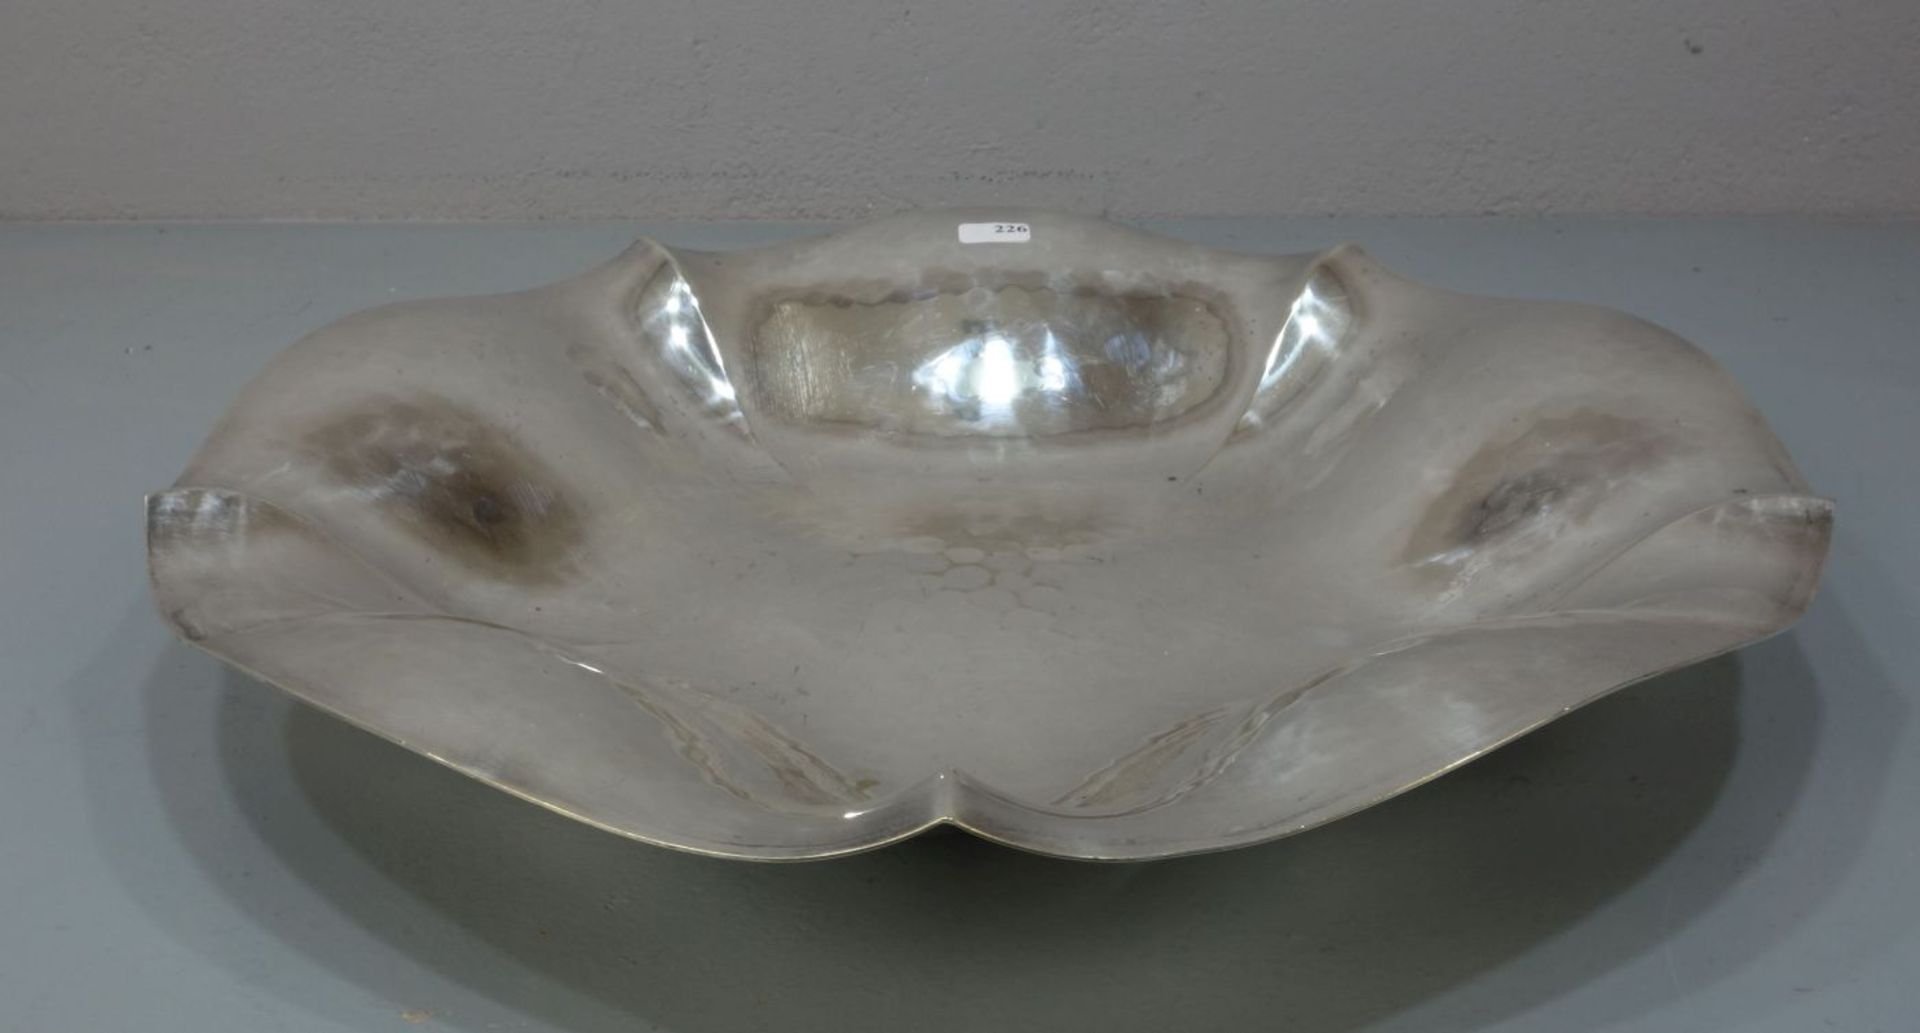 ART DÉCO - SCHALE / plated bowl, versilbertes Metall, WMF - Württembergische Metallwarenfabrik, - Image 2 of 4